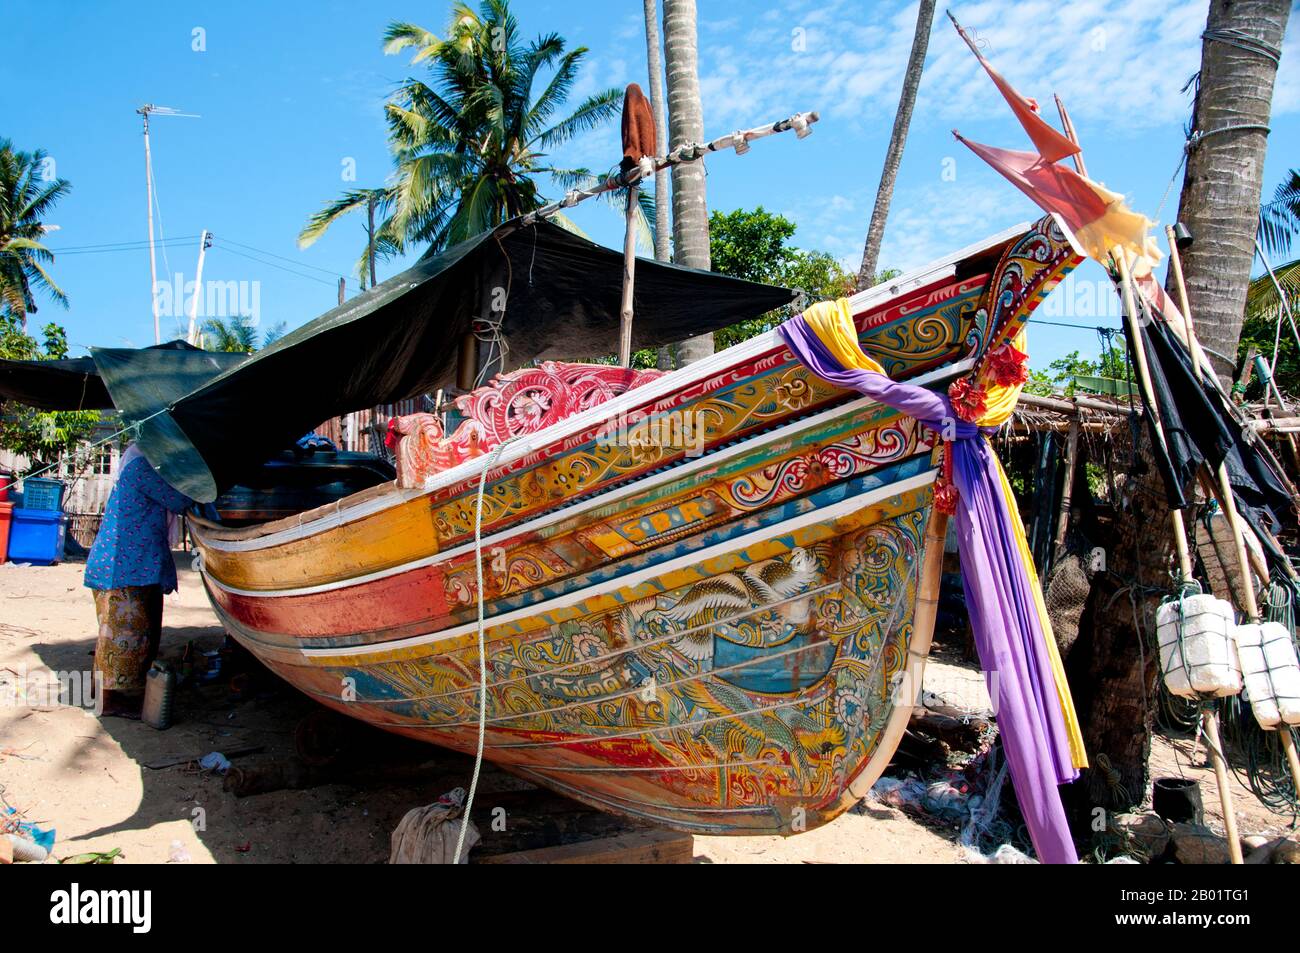 Thailandia: Korlae Fishing boats, Saiburi, Thailandia meridionale. Lungo la costa orientale della Thailandia peninsulare, da Ko Samui verso sud, barche colorate e dipinte da pescatori musulmani sono state costruite e decorate per centinaia di anni. I migliori esempi di questa industria ora in declino hanno origine nei cantieri navali del distretto di Saiburi, nella provincia di Pattani. Originariamente barche a vela, le corna sono ora alimentate da motori da pescatori locali. Tra i personaggi comunemente raffigurati sui disegni superbamente dettagliati dello scafo ci sono il leone singha, l'uccello corna gagasura, il serpente marino payanak e il garuda B. Foto Stock